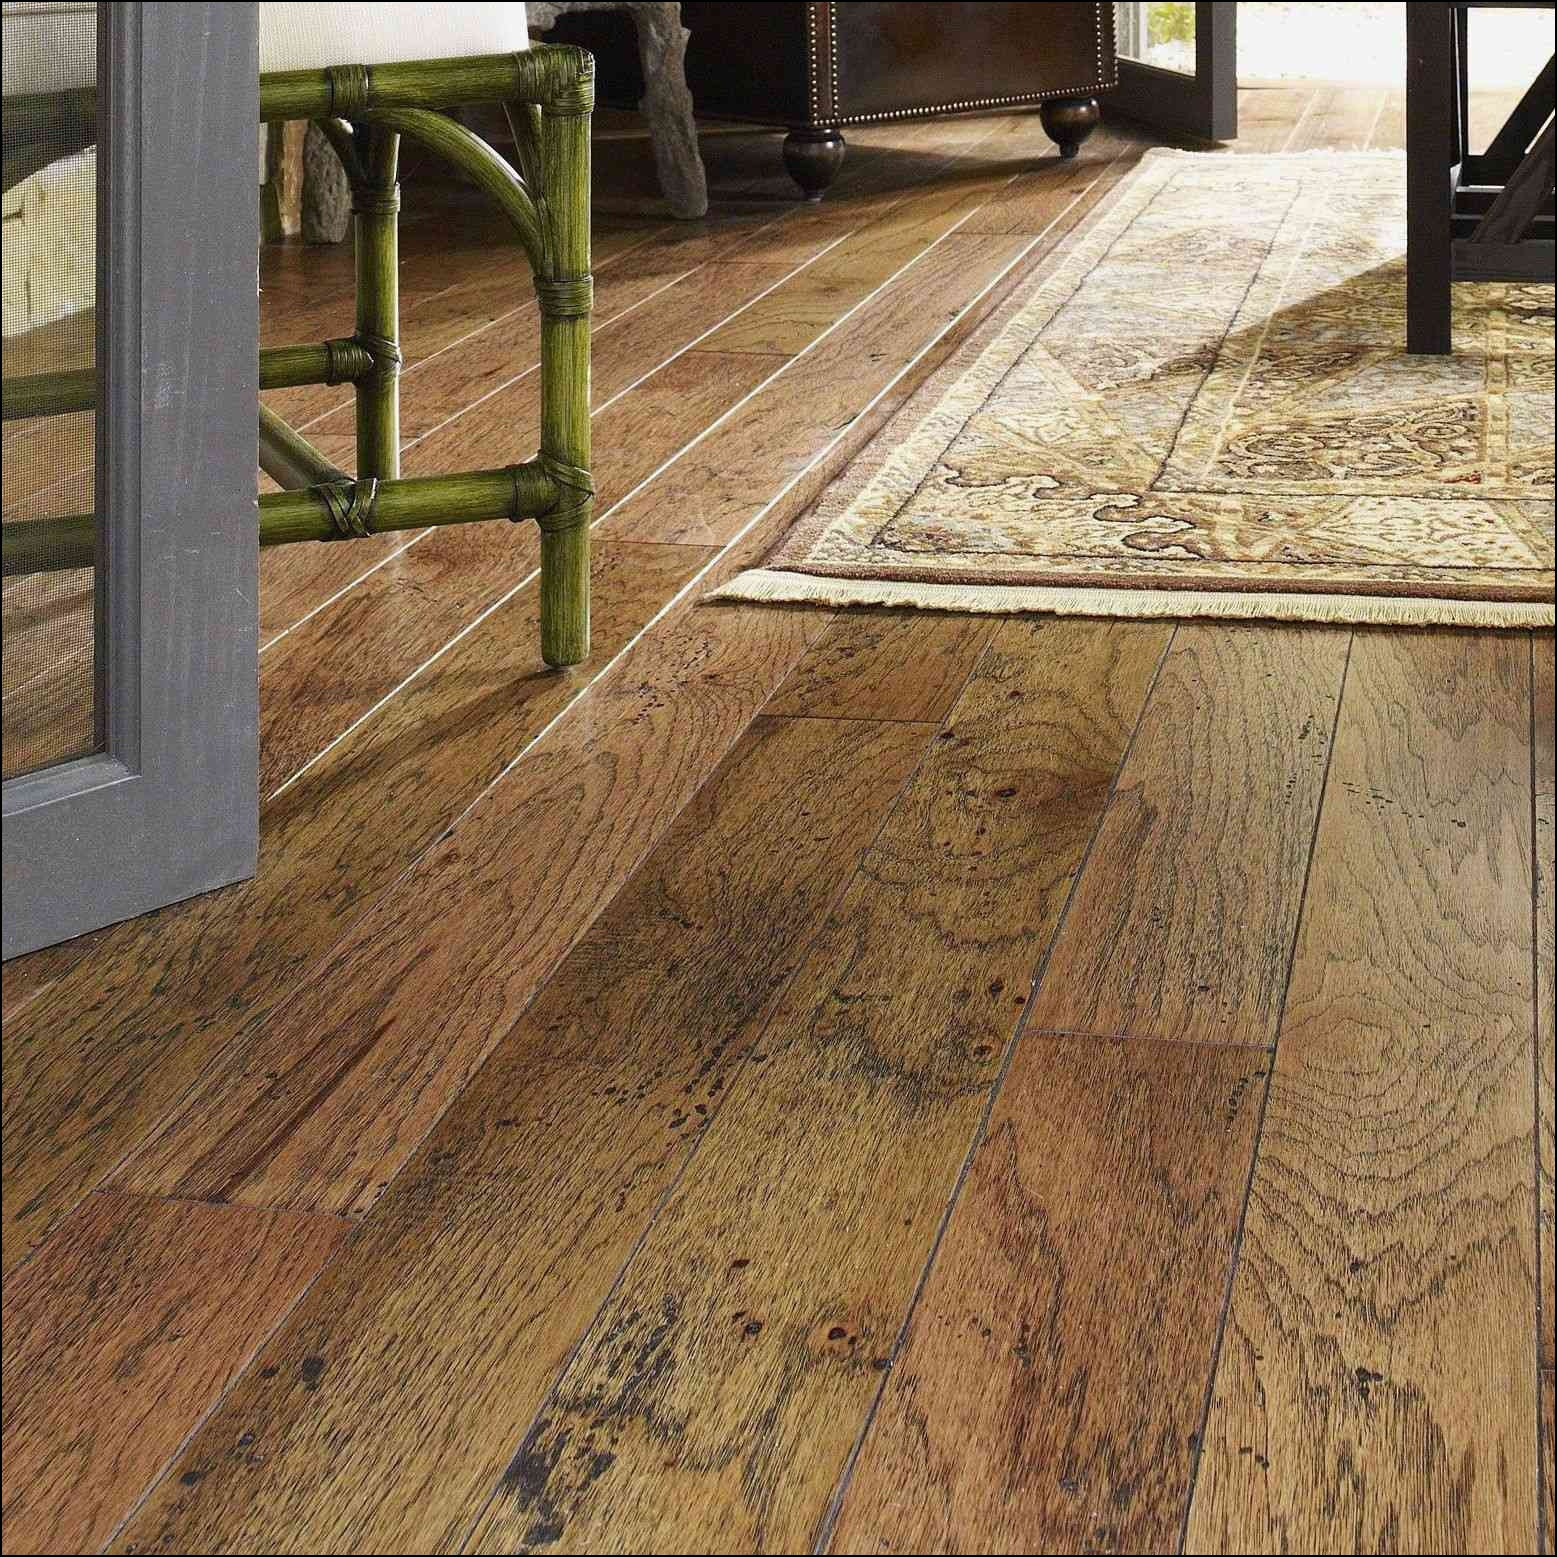 cali bamboo hardwood flooring of wide plank flooring ideas within wide plank dark wood flooring images best type wood flooring best floor floor wood floor wood